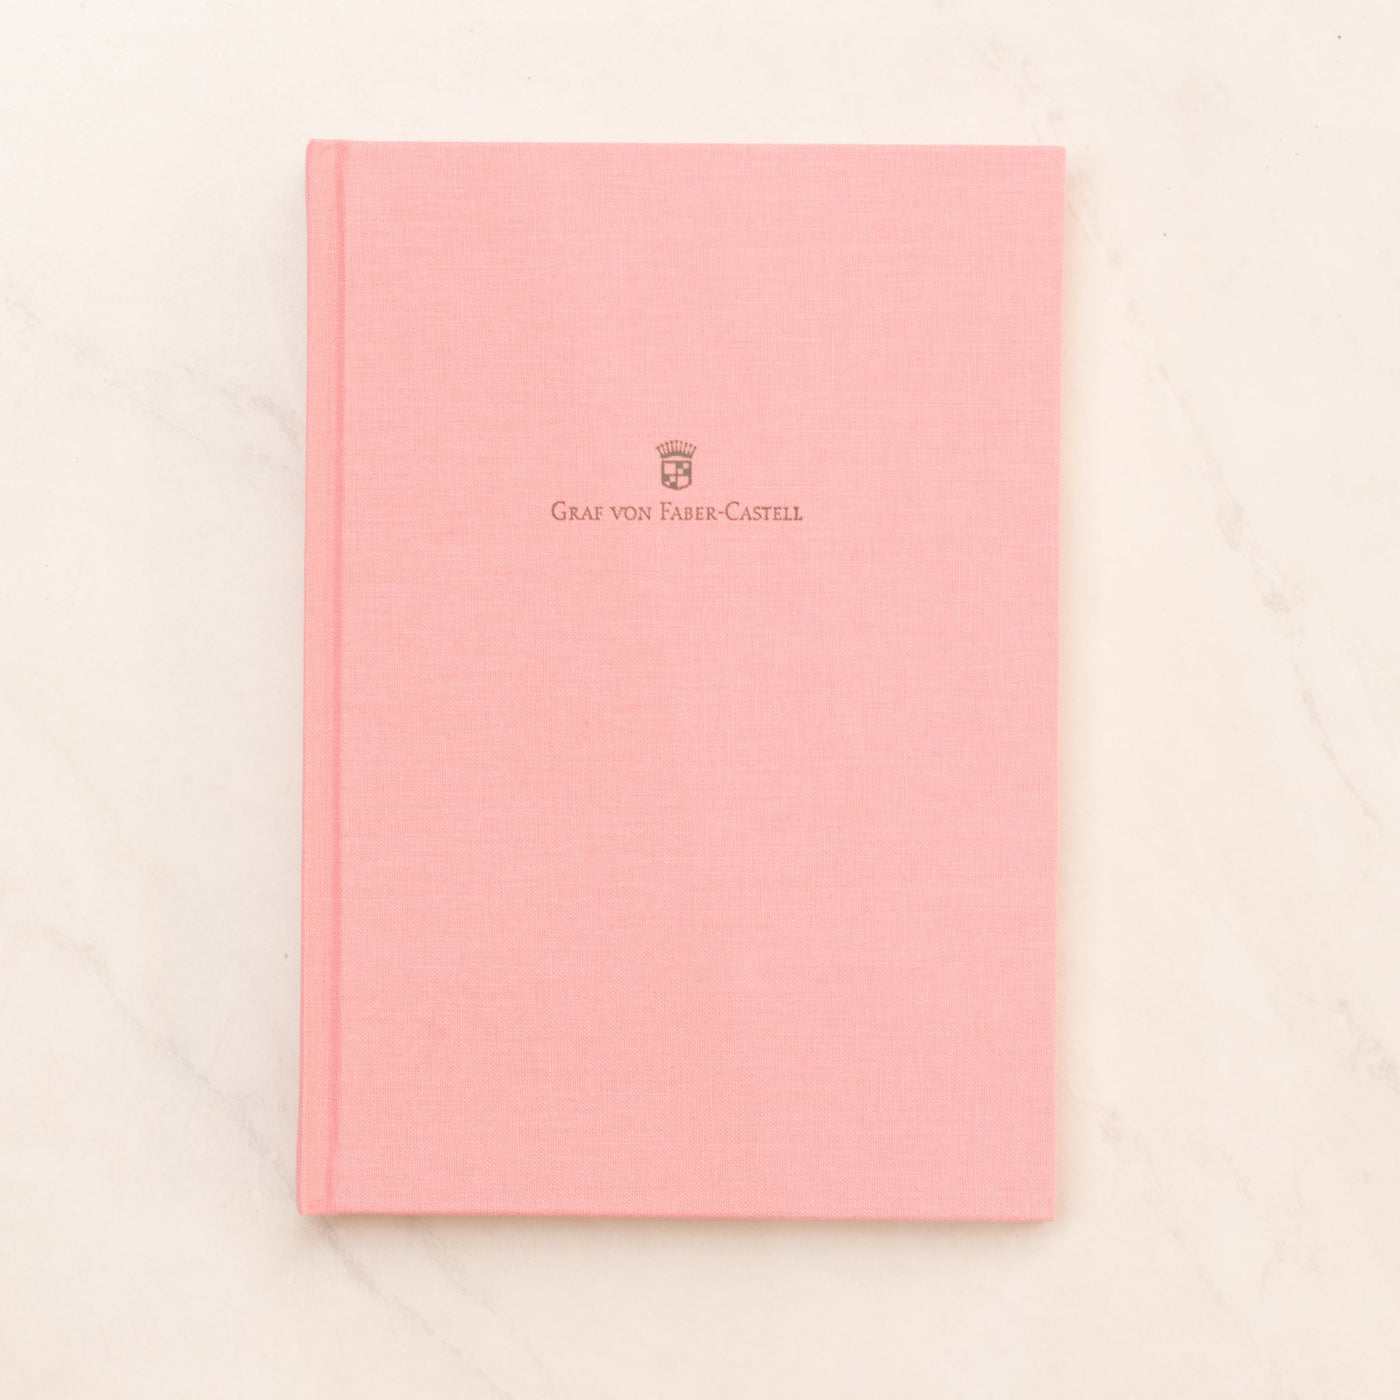 Graf von Faber-Castell Cherry Blossom Notebook